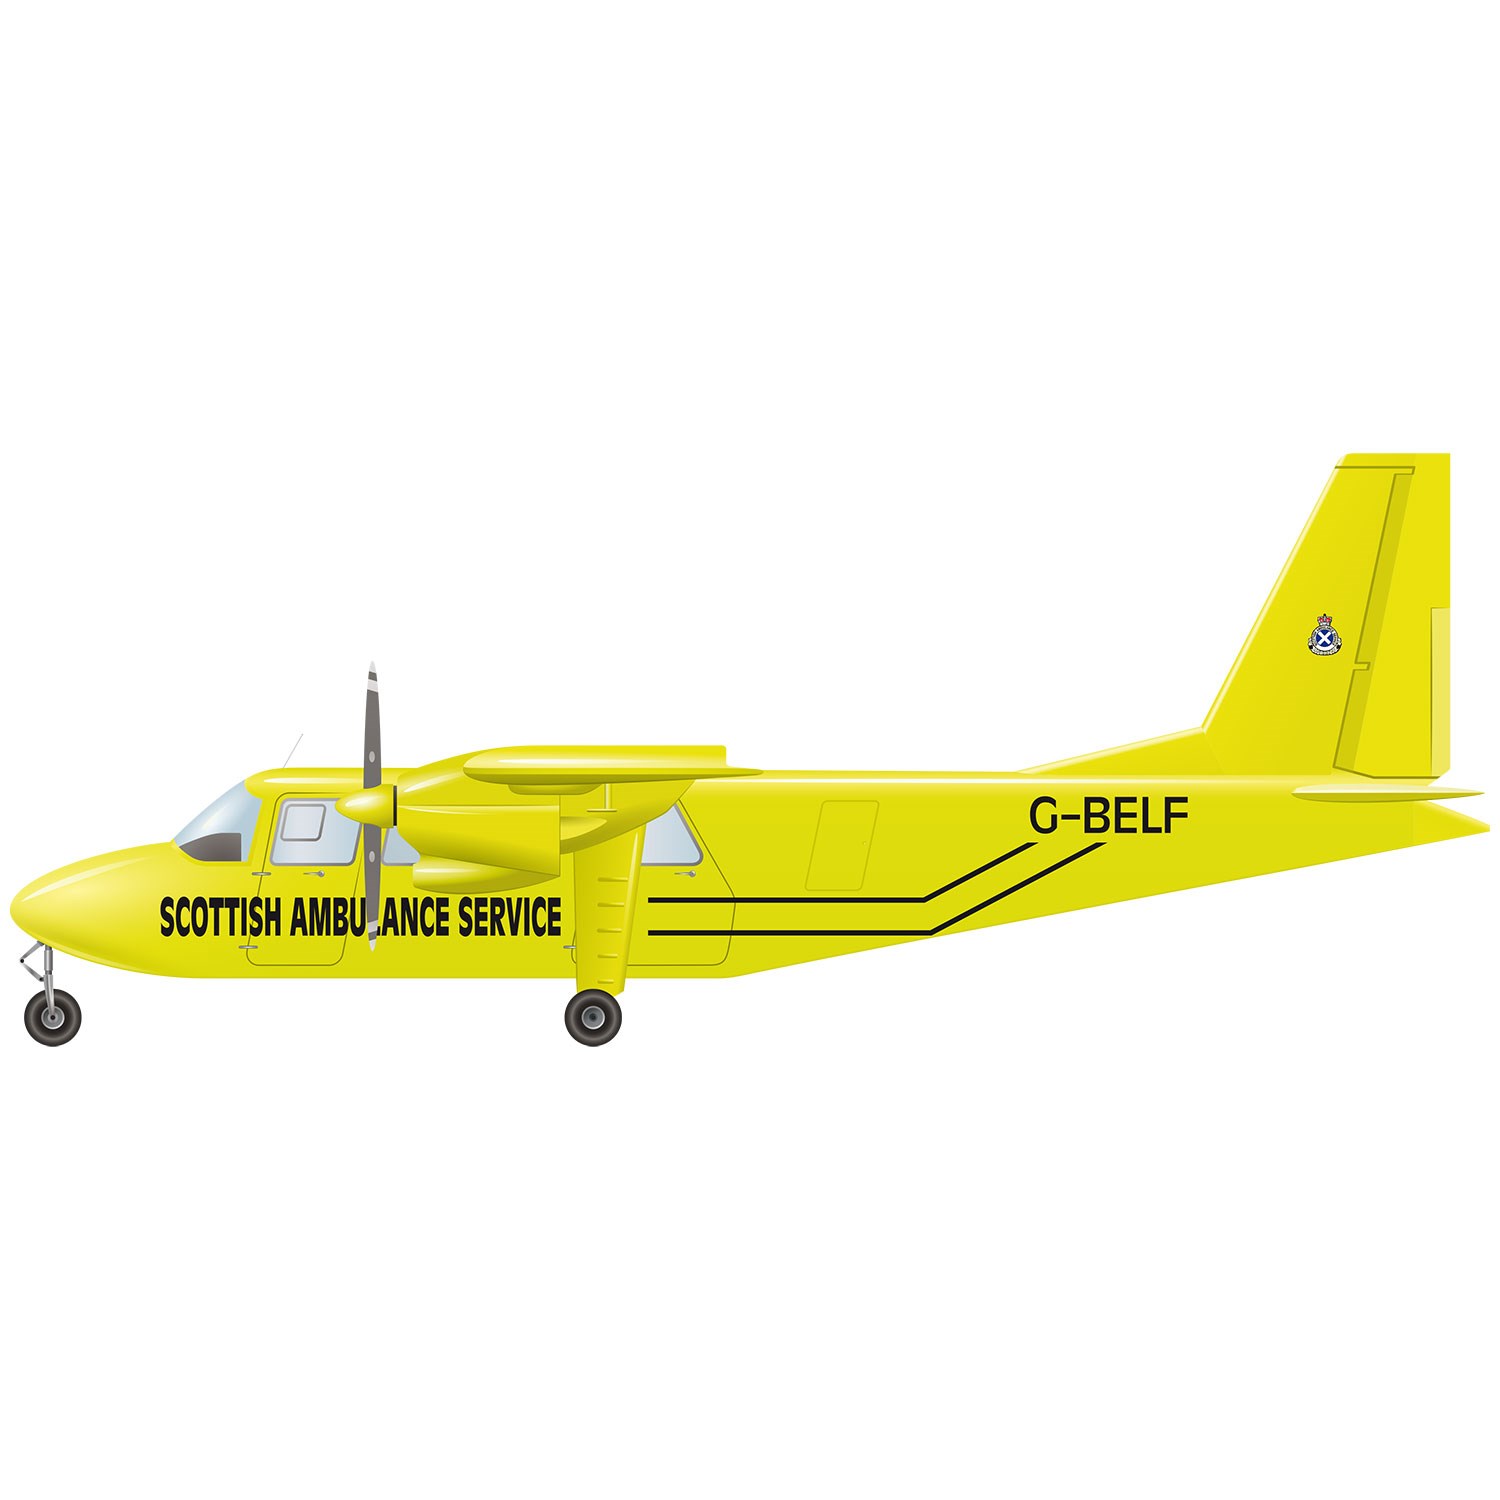 A yellow Britten-Norman Islander aircraft. 